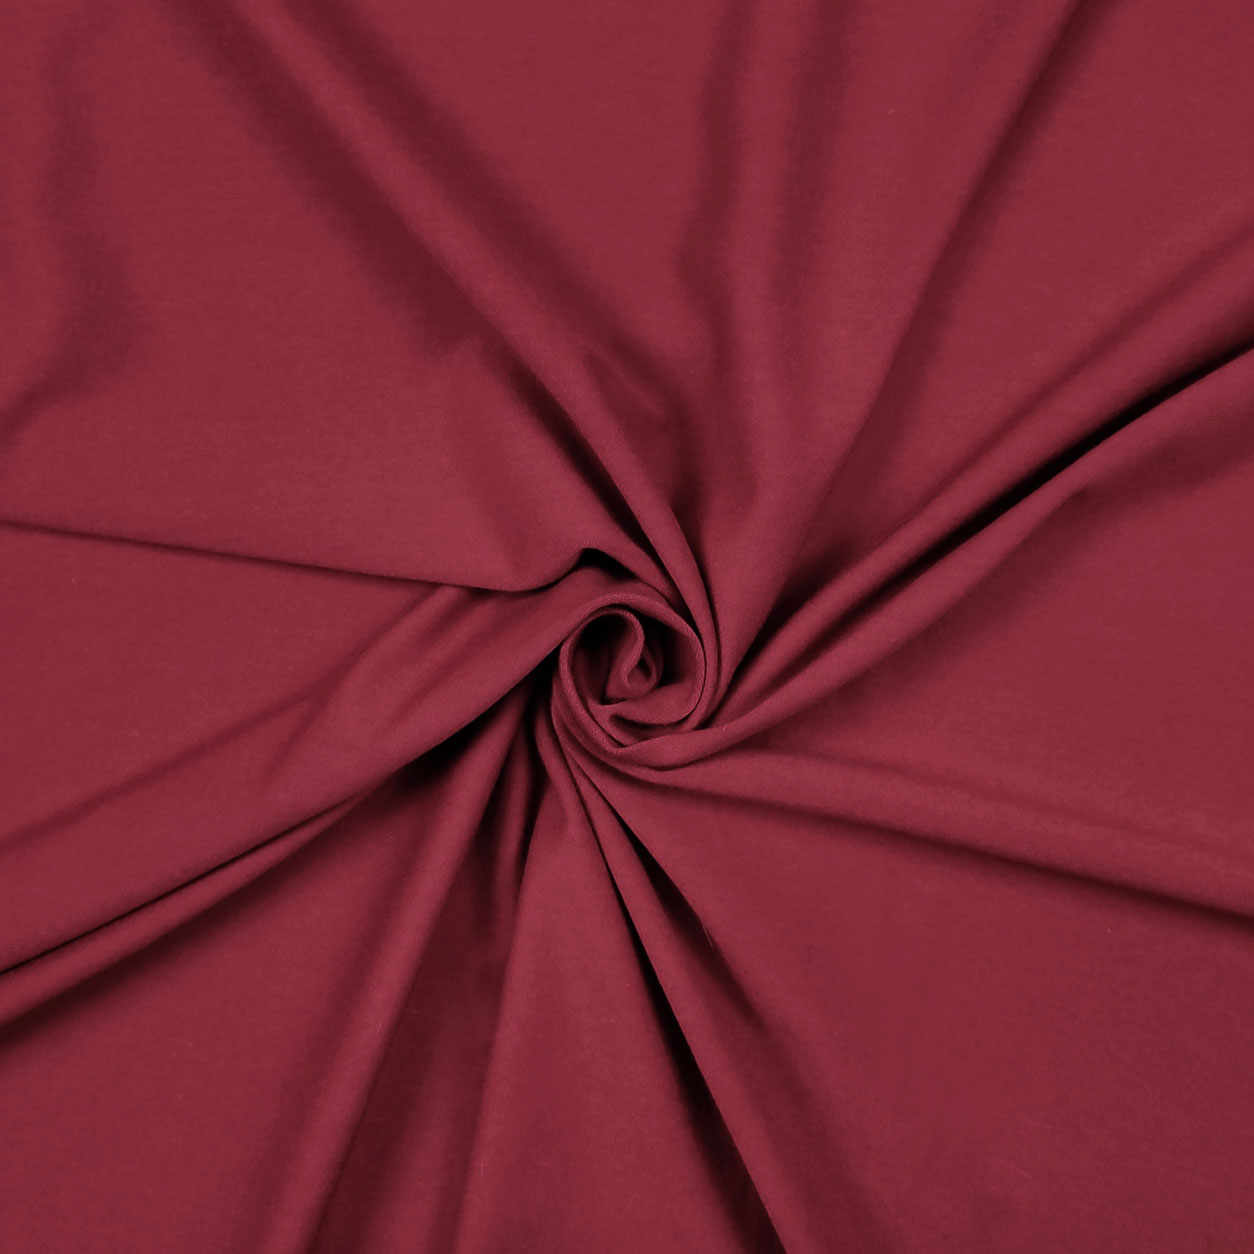 Tessuto rosso scuro jersey cotone